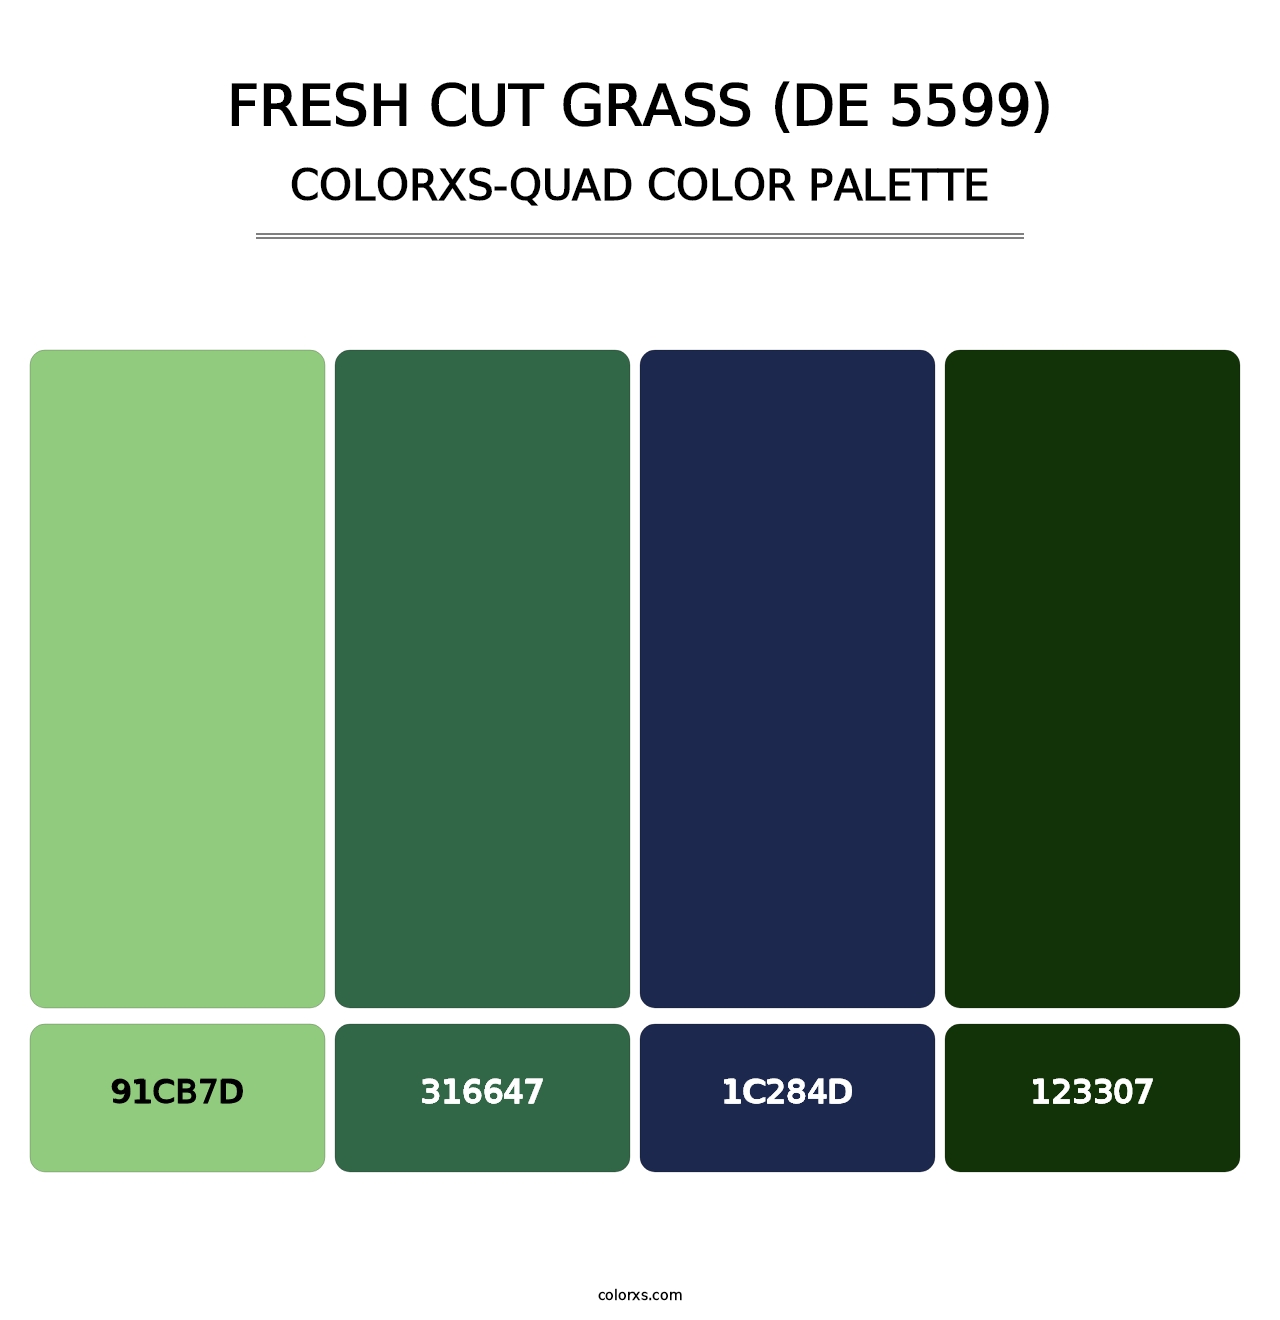 Fresh Cut Grass (DE 5599) - Colorxs Quad Palette